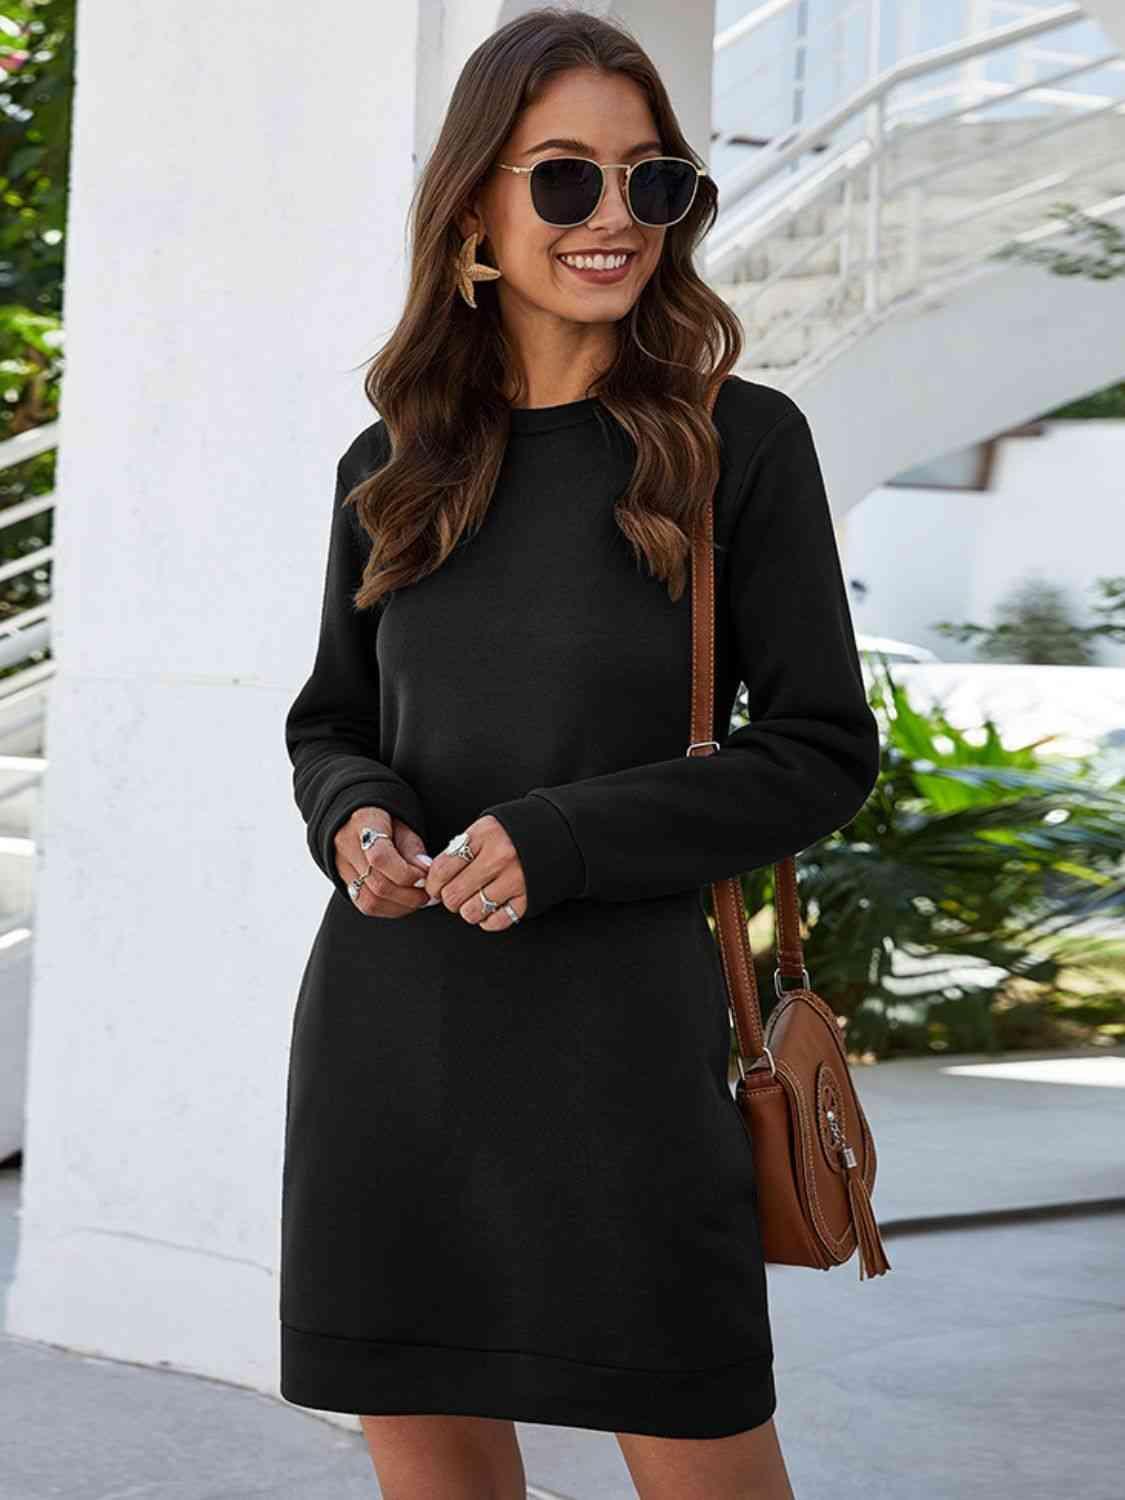 Bona Fide Fashion - Round Neck Long Sleeve Mini Dress with Pockets - Women Fashion - Bona Fide Fashion